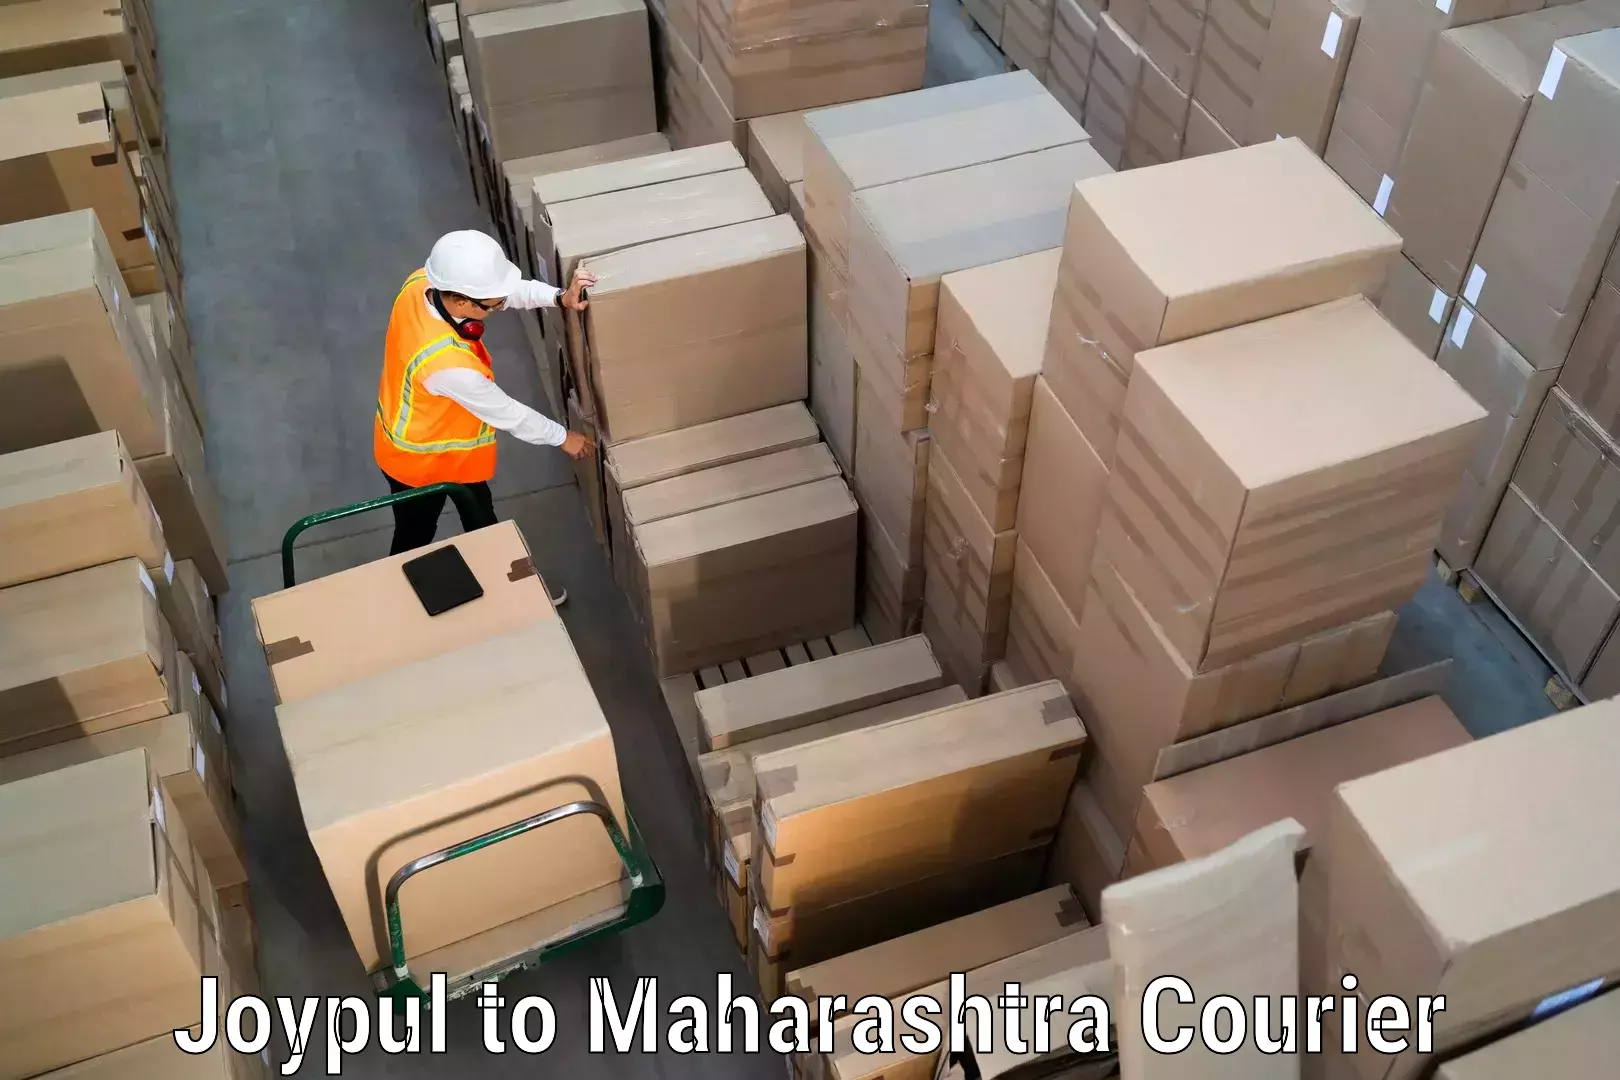 Next day courier Joypul to Maharashtra